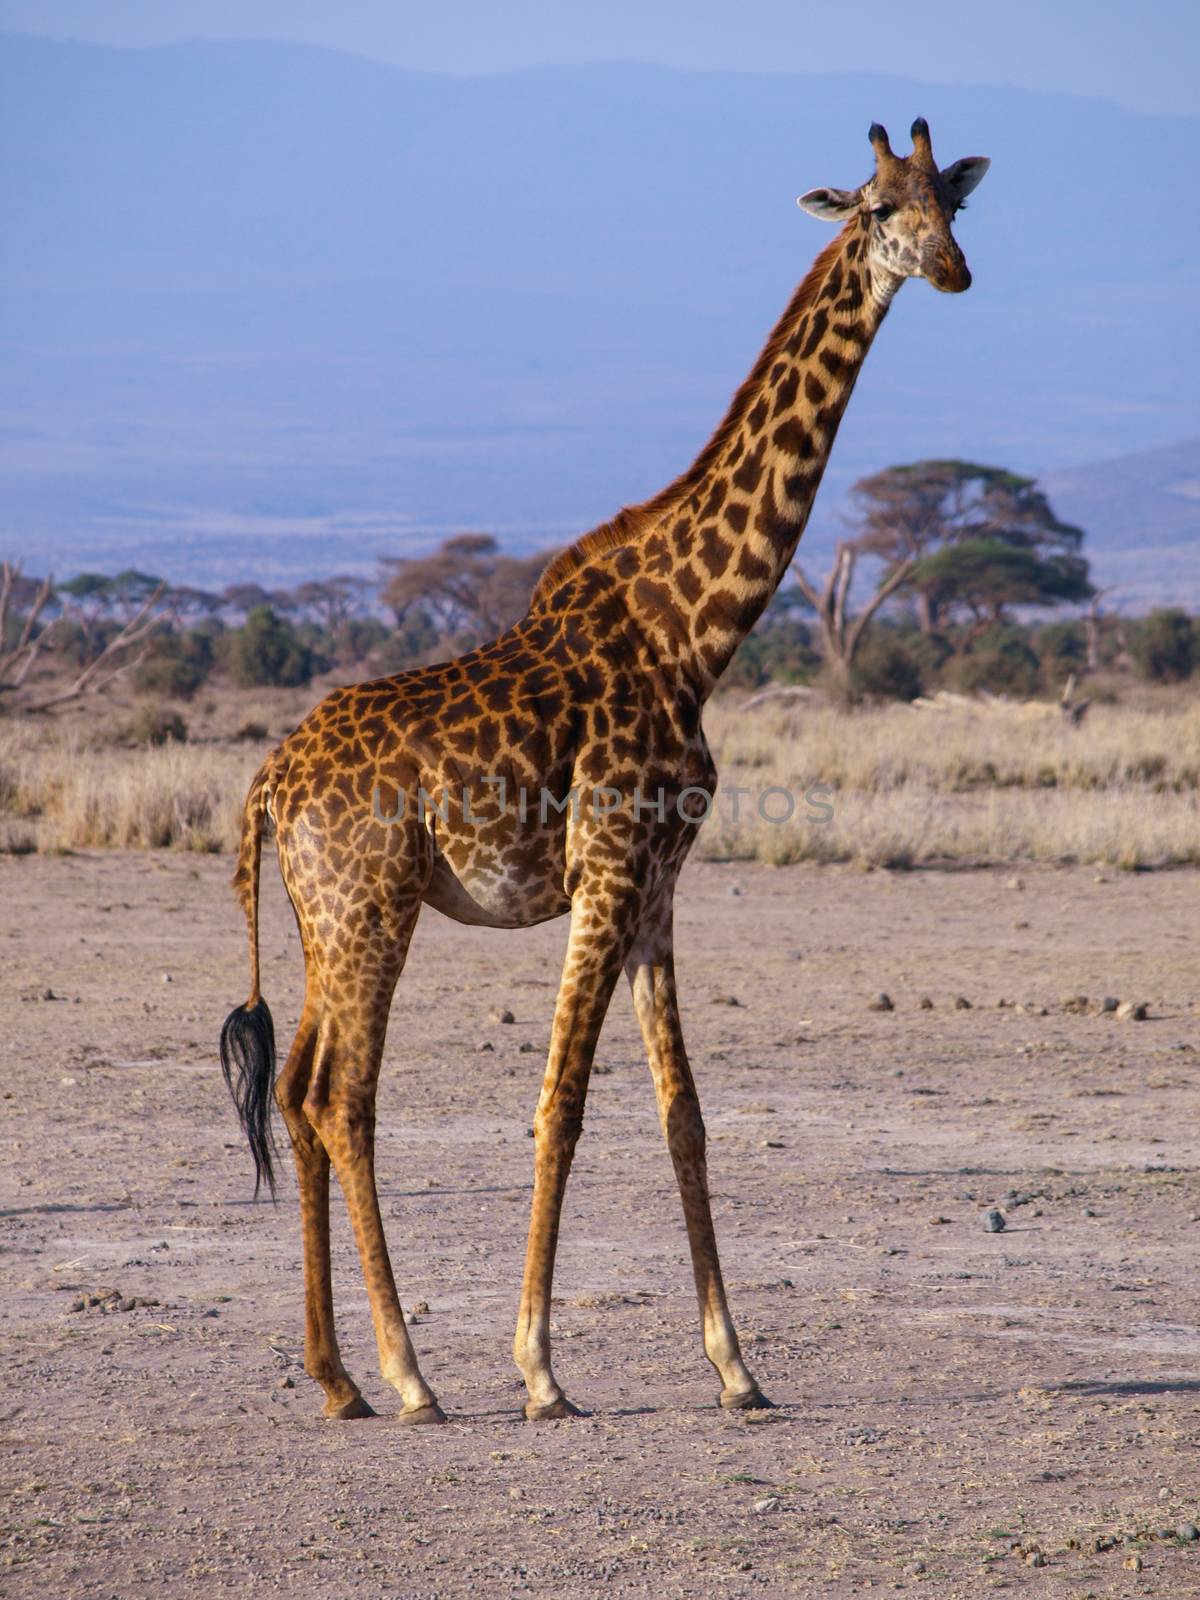 Tall giraffe standing and watching around dry savannah